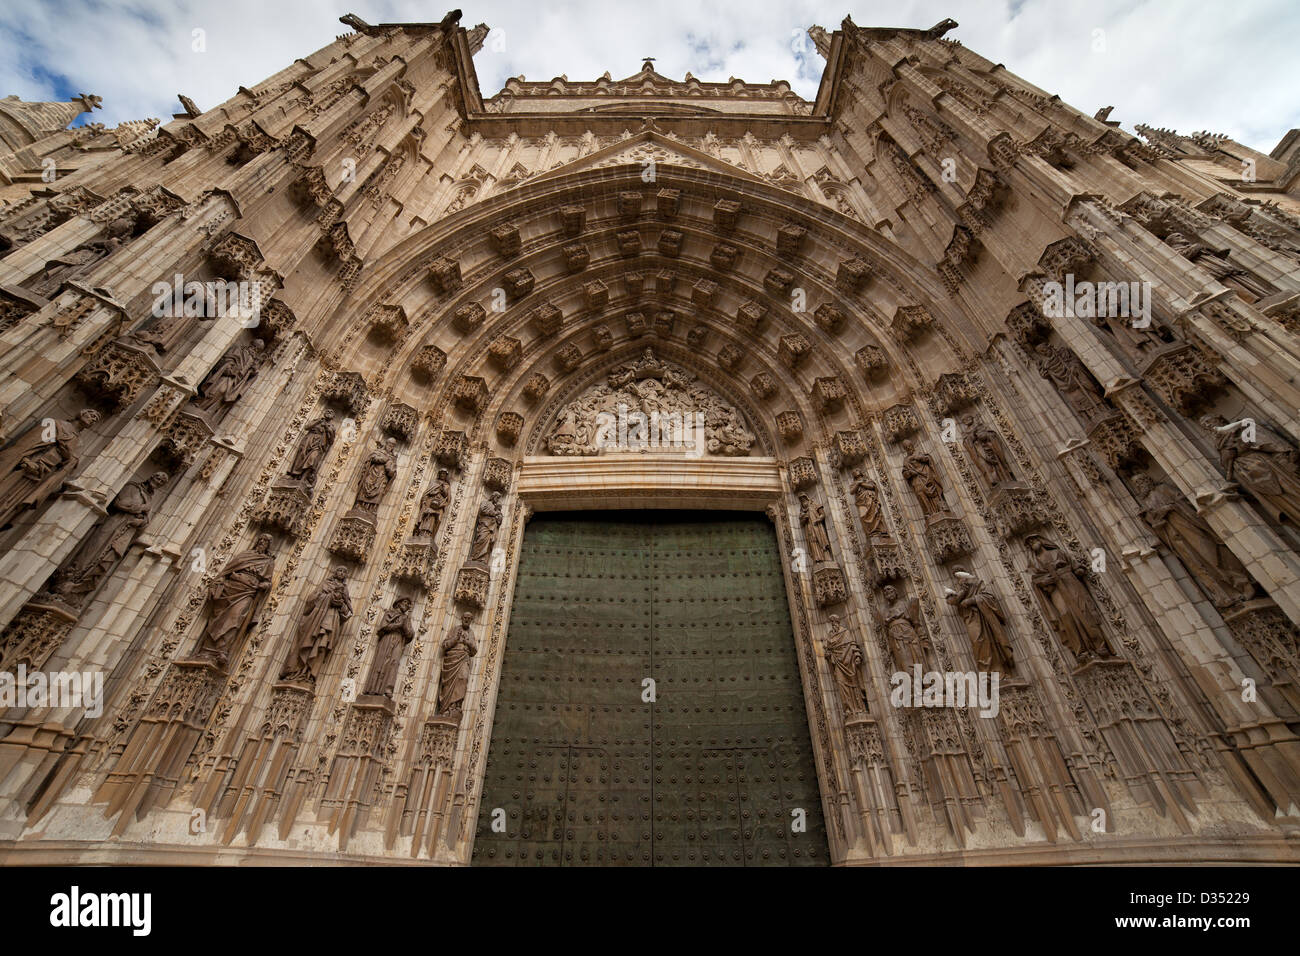 Porte de l'assomption (espagnol : Puerta de la asuncion) de la cathédrale de Séville en Espagne, façade ouest. Banque D'Images